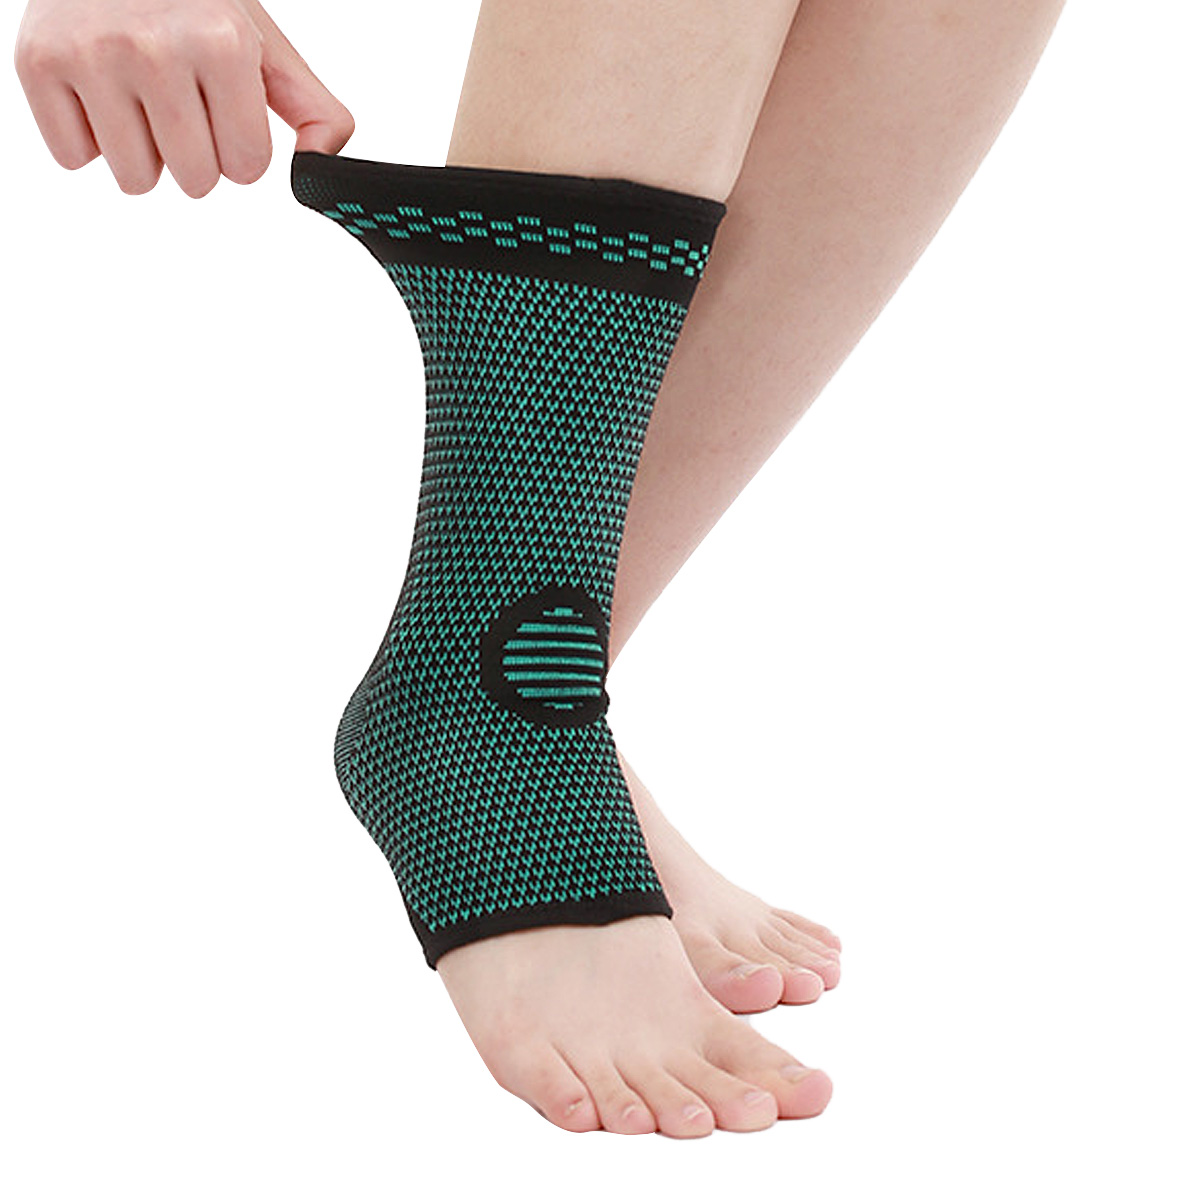 Breathable ankle brace leungeun baju-Nylon lawon